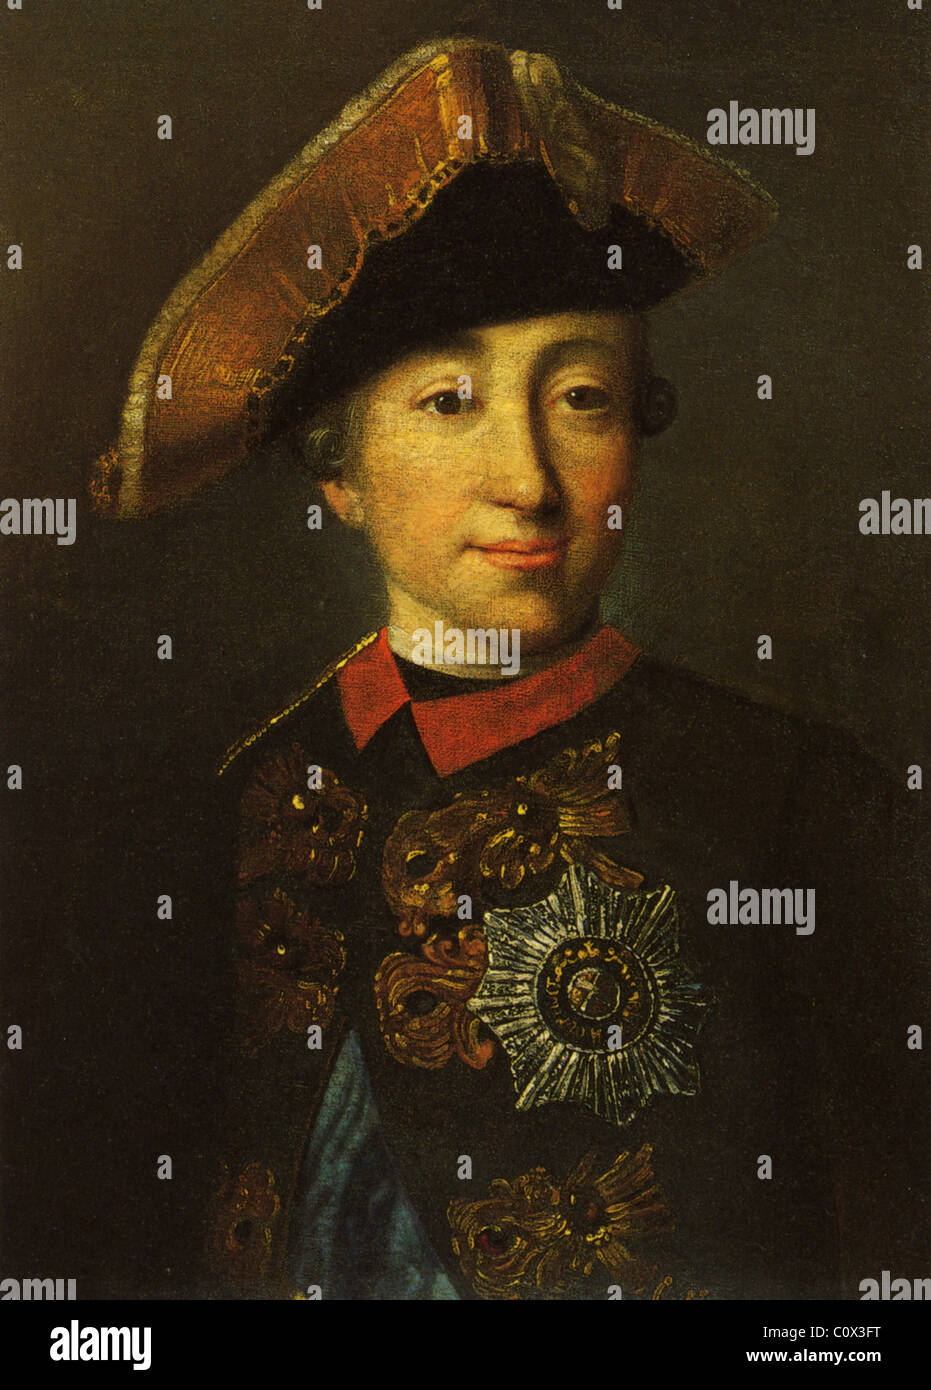 Pietro III di Russia (1728-1762) Di artista sconosciuto Foto Stock